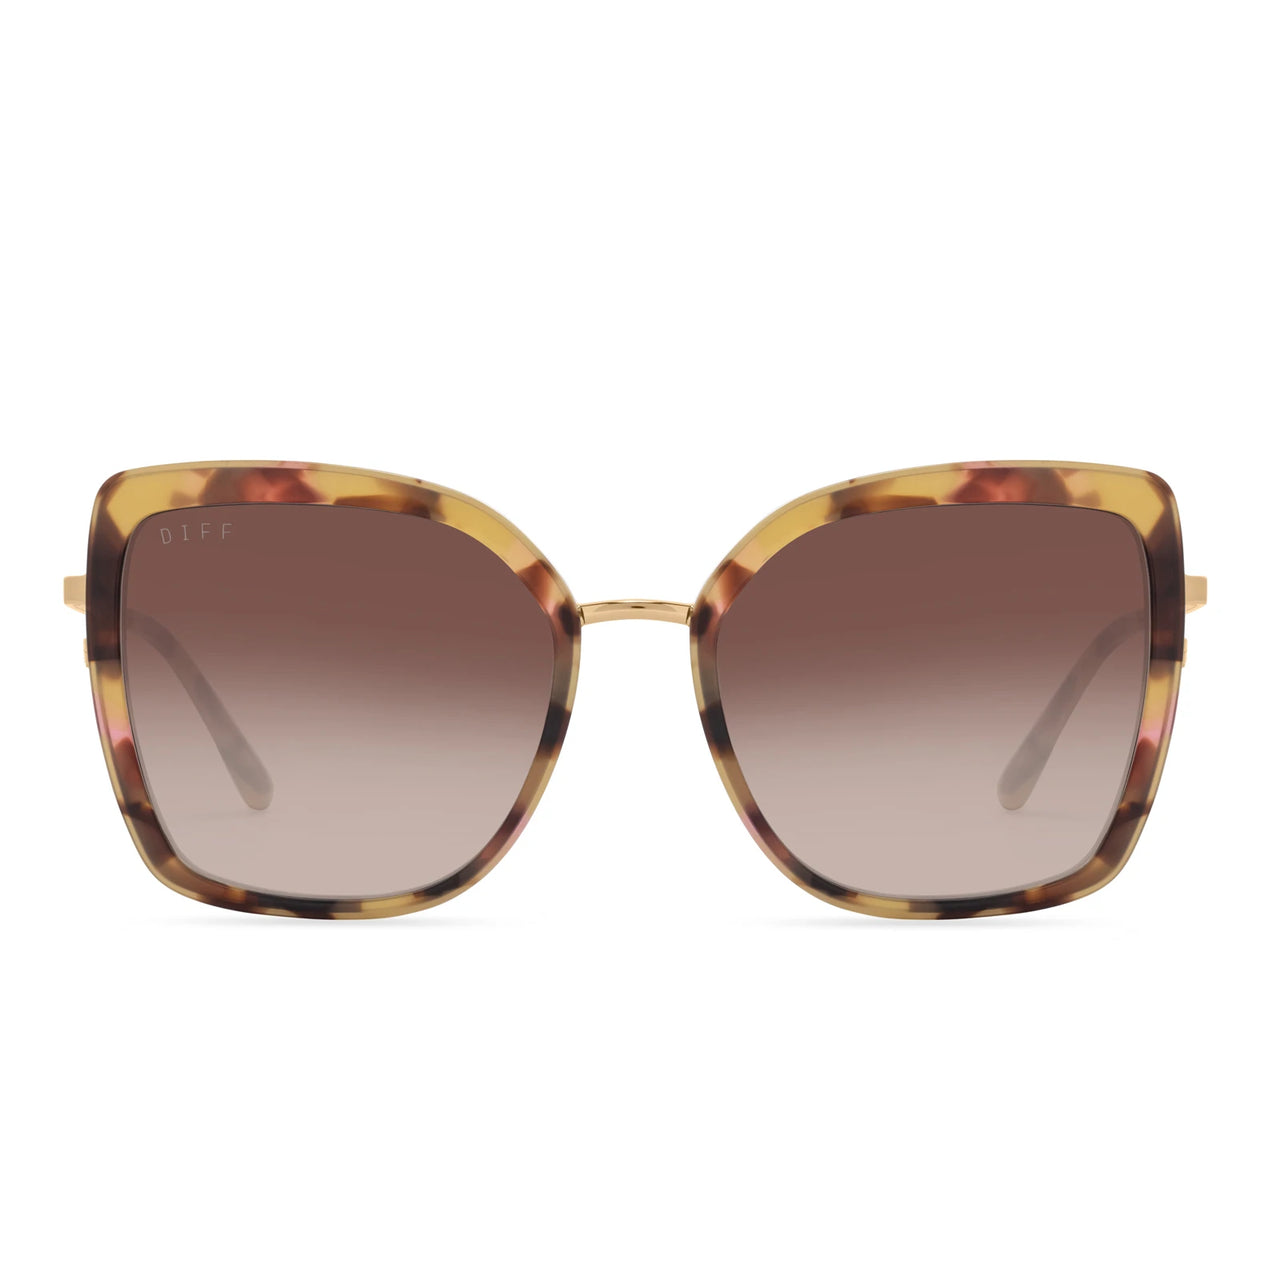 DIFF Clarisse Gold Brown Gradient Sunglasses